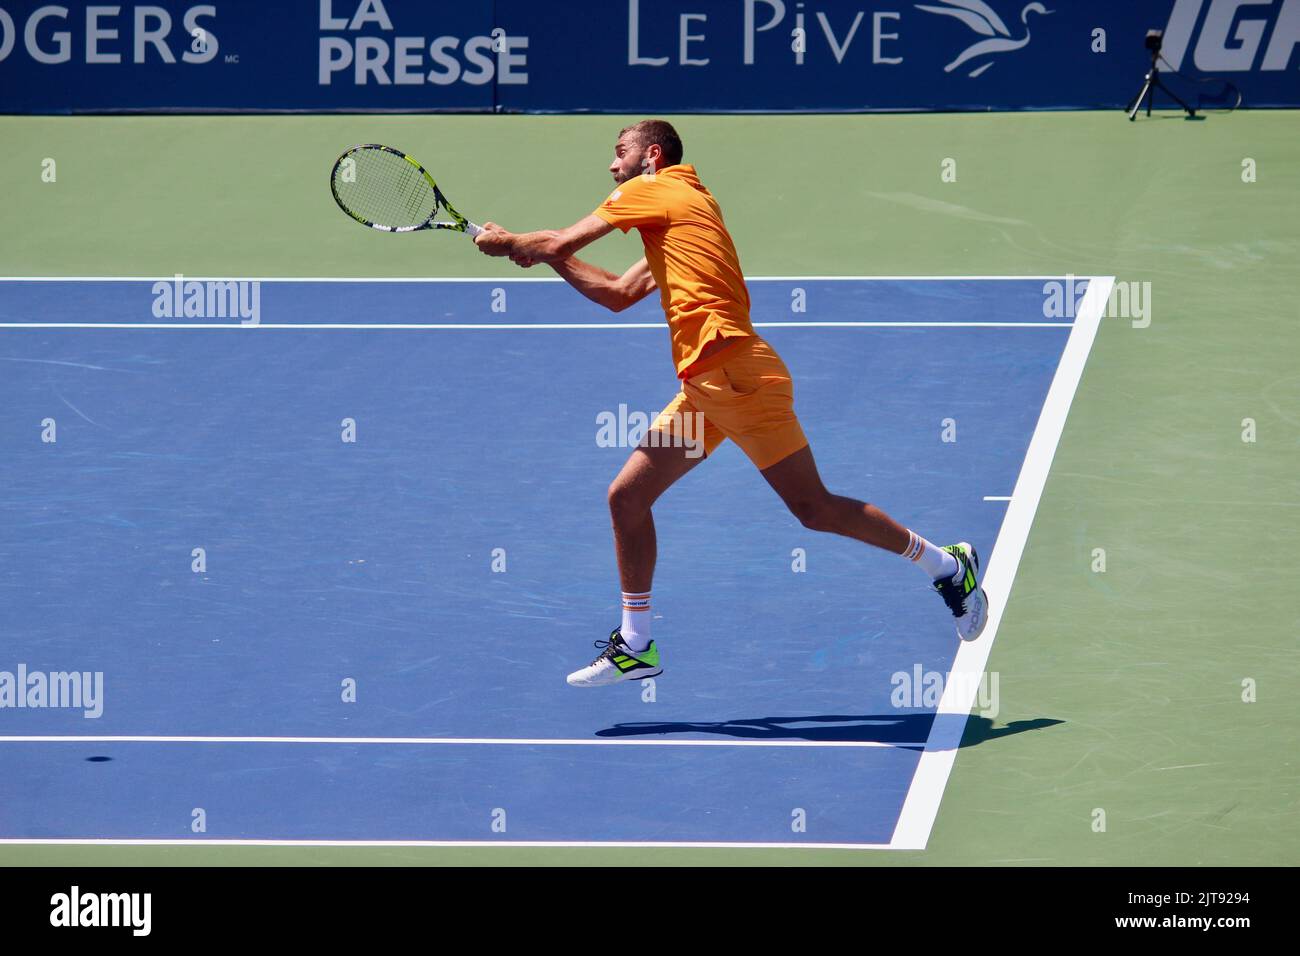 Benoît Paire di Francia gioca la partita di qualificazione contro Denis Kudla degli Stati Uniti, al National Bank Open di Montreal, QC. Agosto 6, 2022 Foto Stock